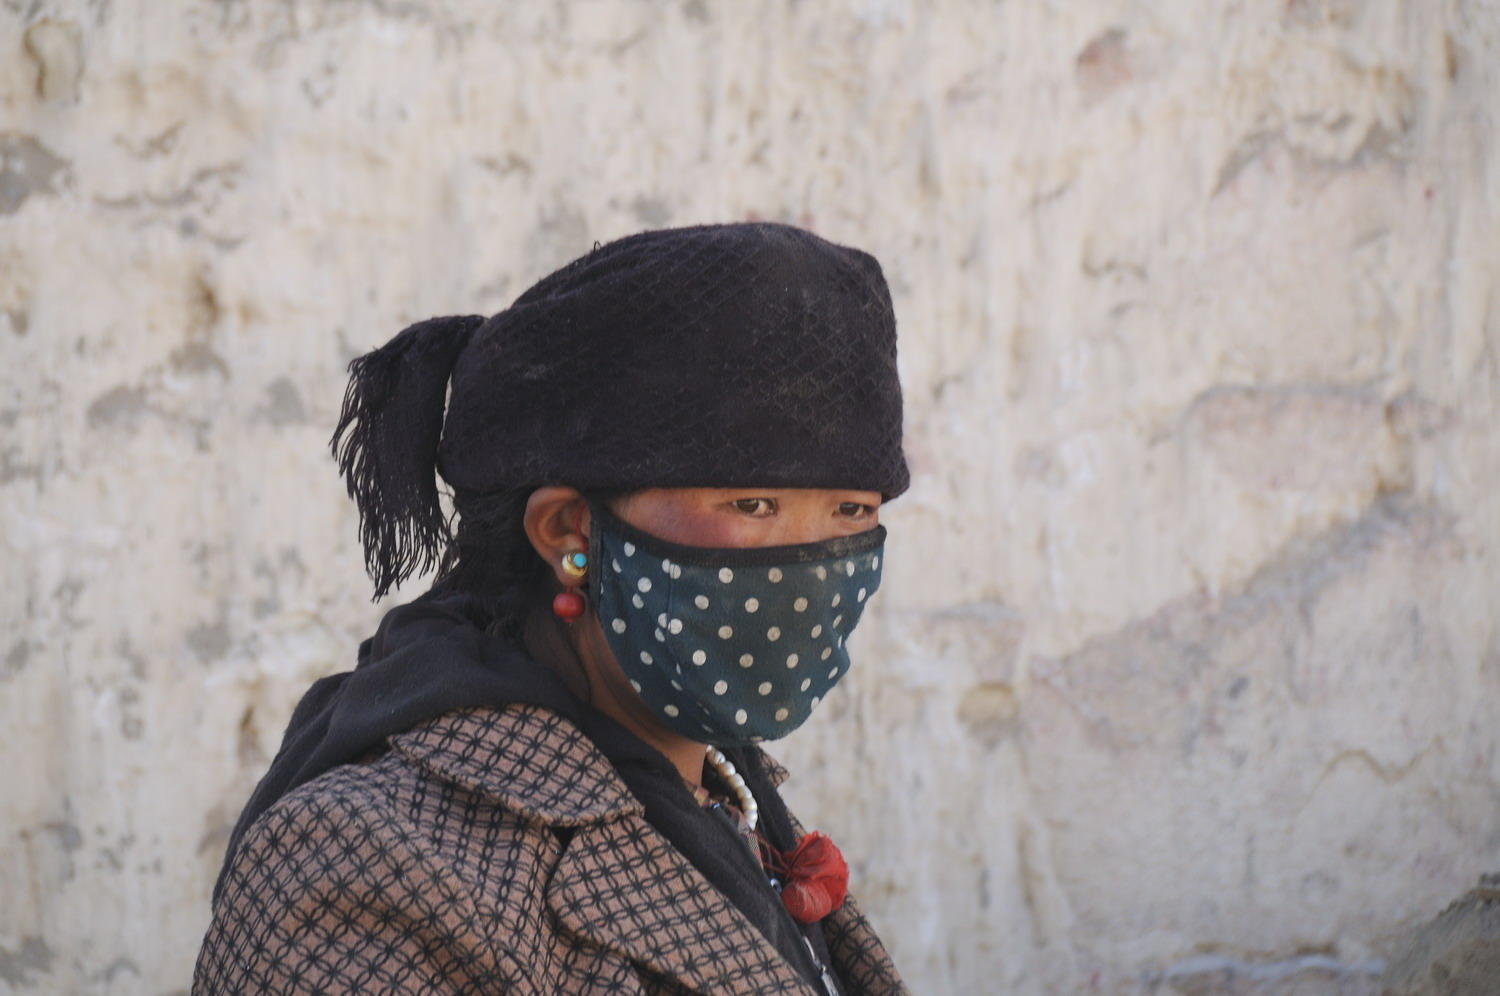 DSC_1078A1 - Tibetan Woman